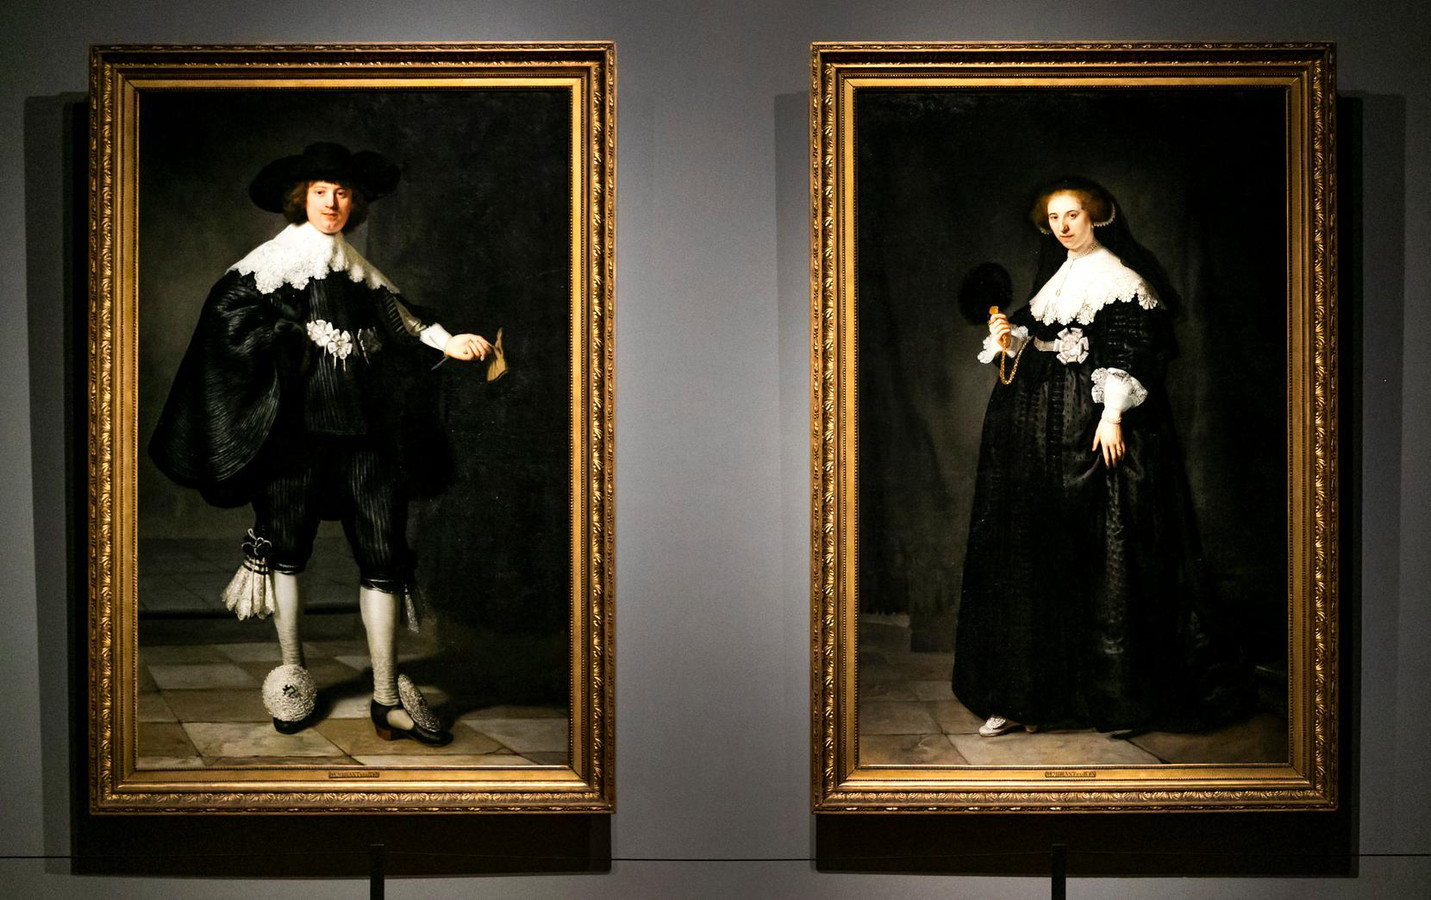 De schilderijen Marten en Oopjen van Rembrandt van Rijn werden door dezelfde eigenaren verkocht. Het Franse Louvre deelt de schilderijen met het Rijksmuseum.